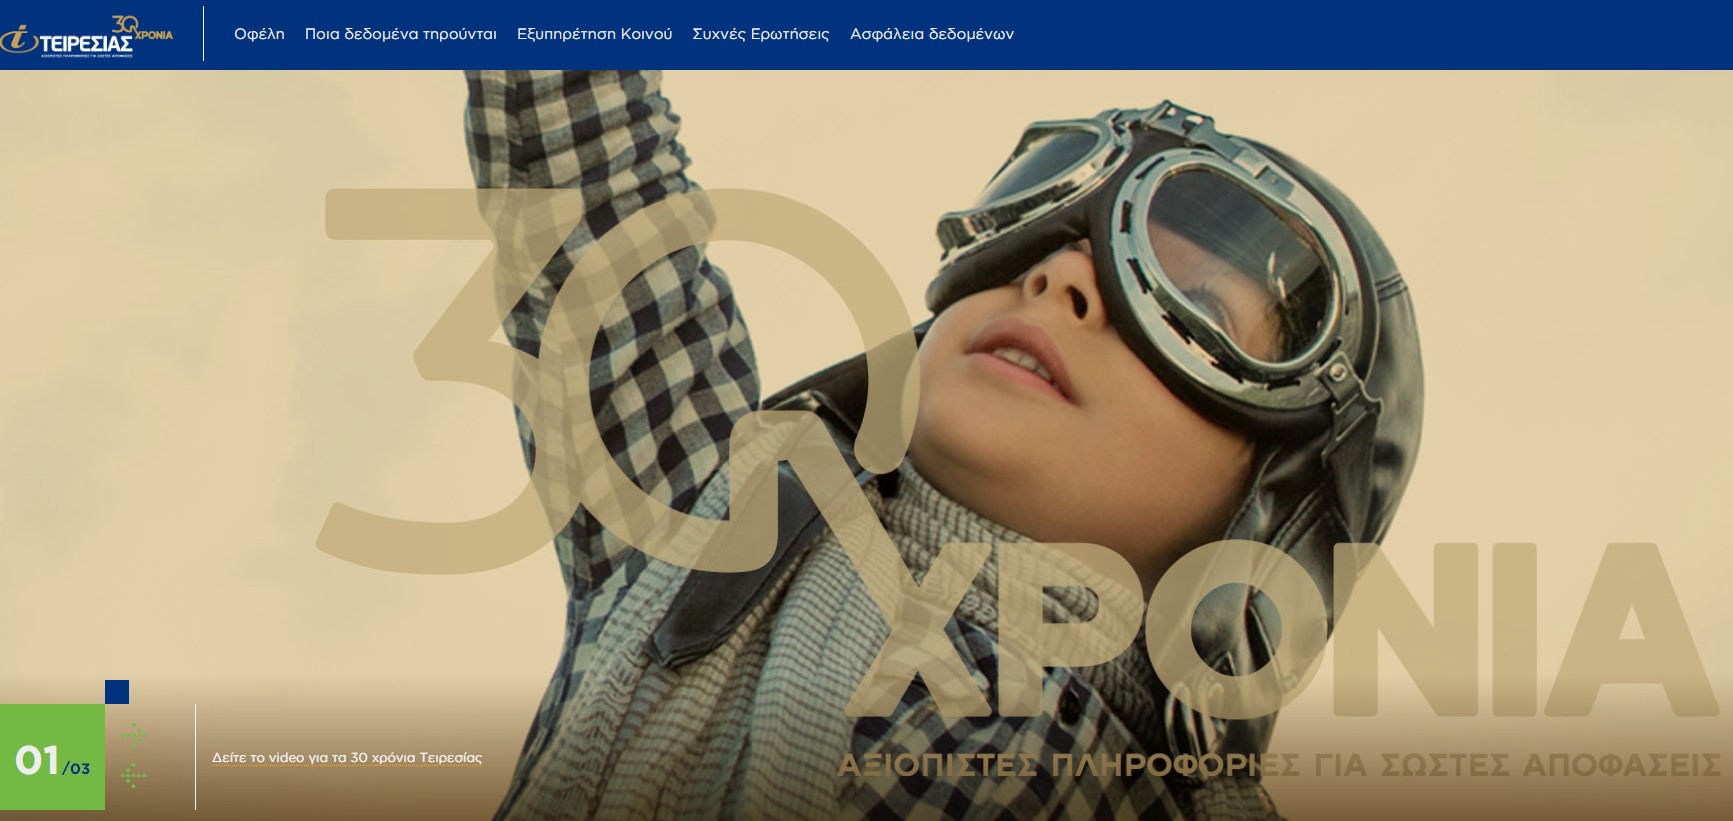 Τειρεσίας: Νέα εταιρική ιστοσελίδα στο πλαίσιο ψηφιακού μετασχηματισμού